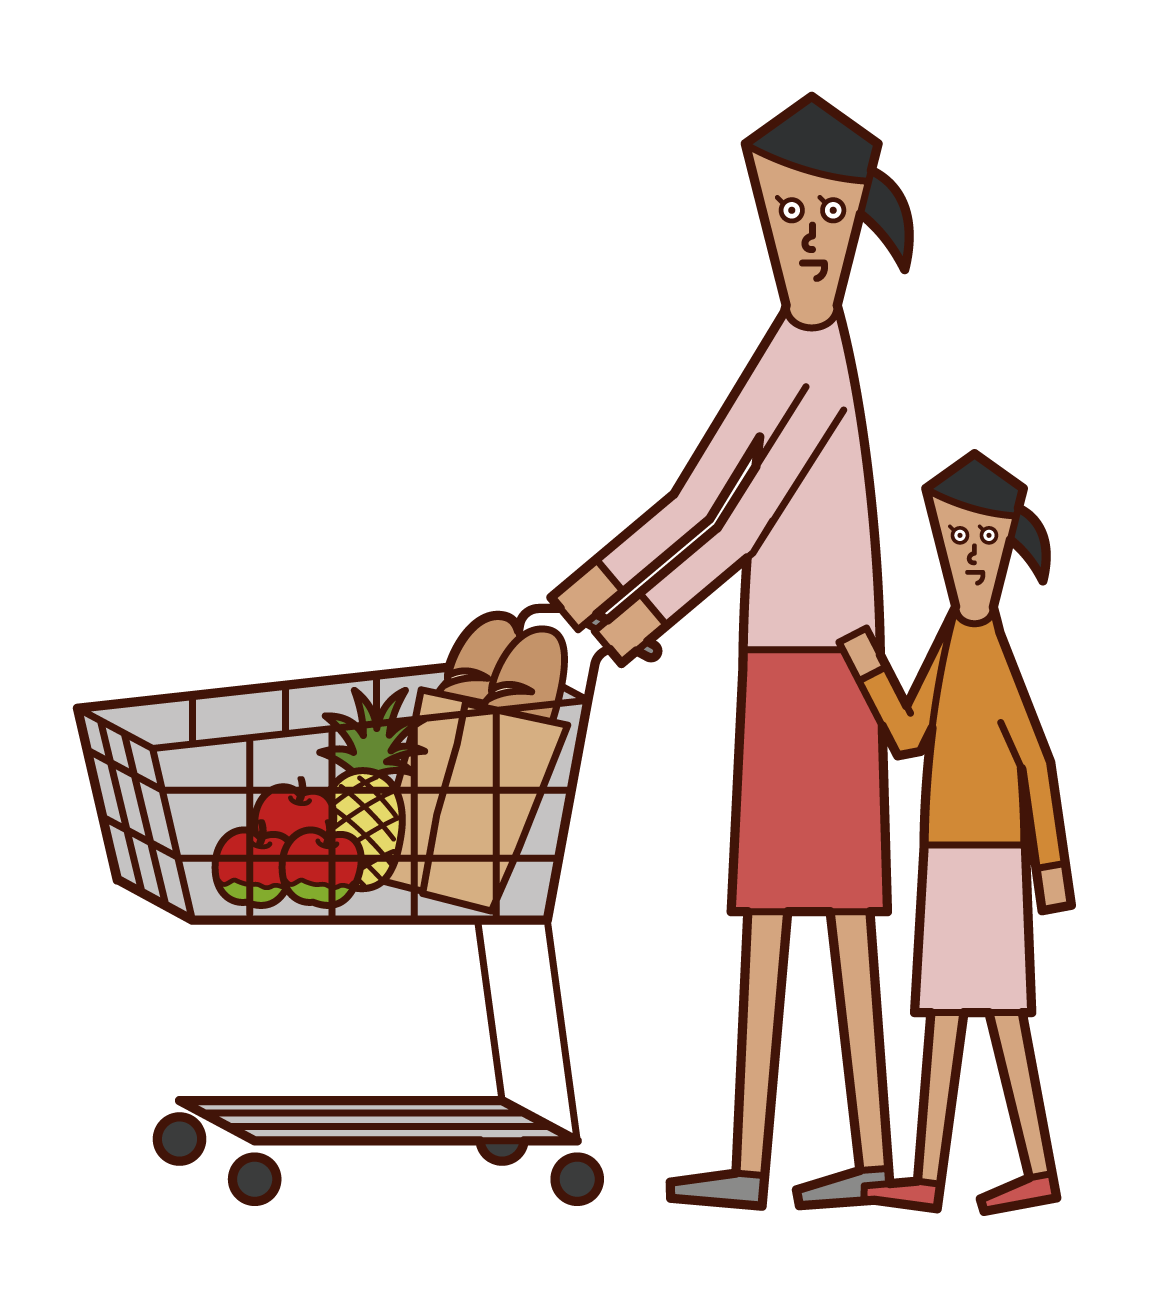 슈퍼마켓에서 쇼핑하는 부모와 자녀의 그림